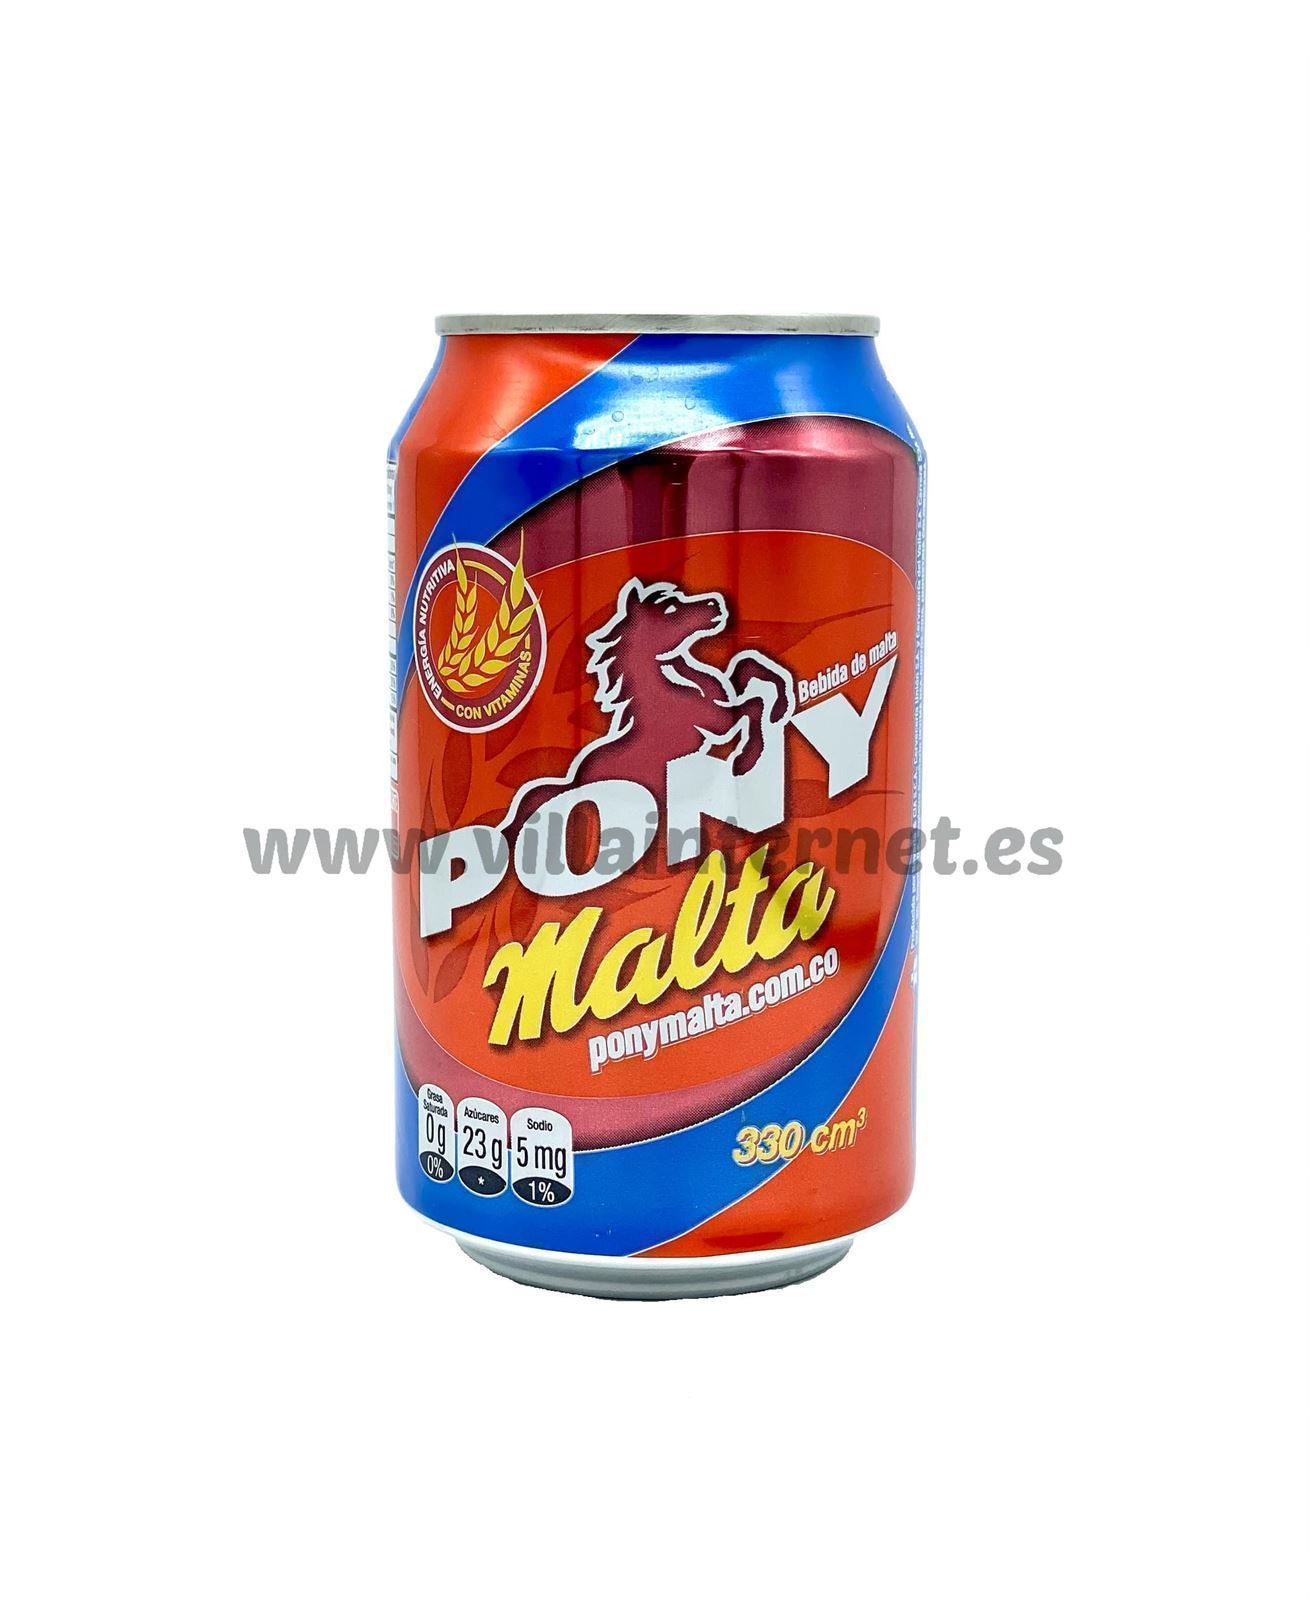 Pony malta 330ml - Imagen 1